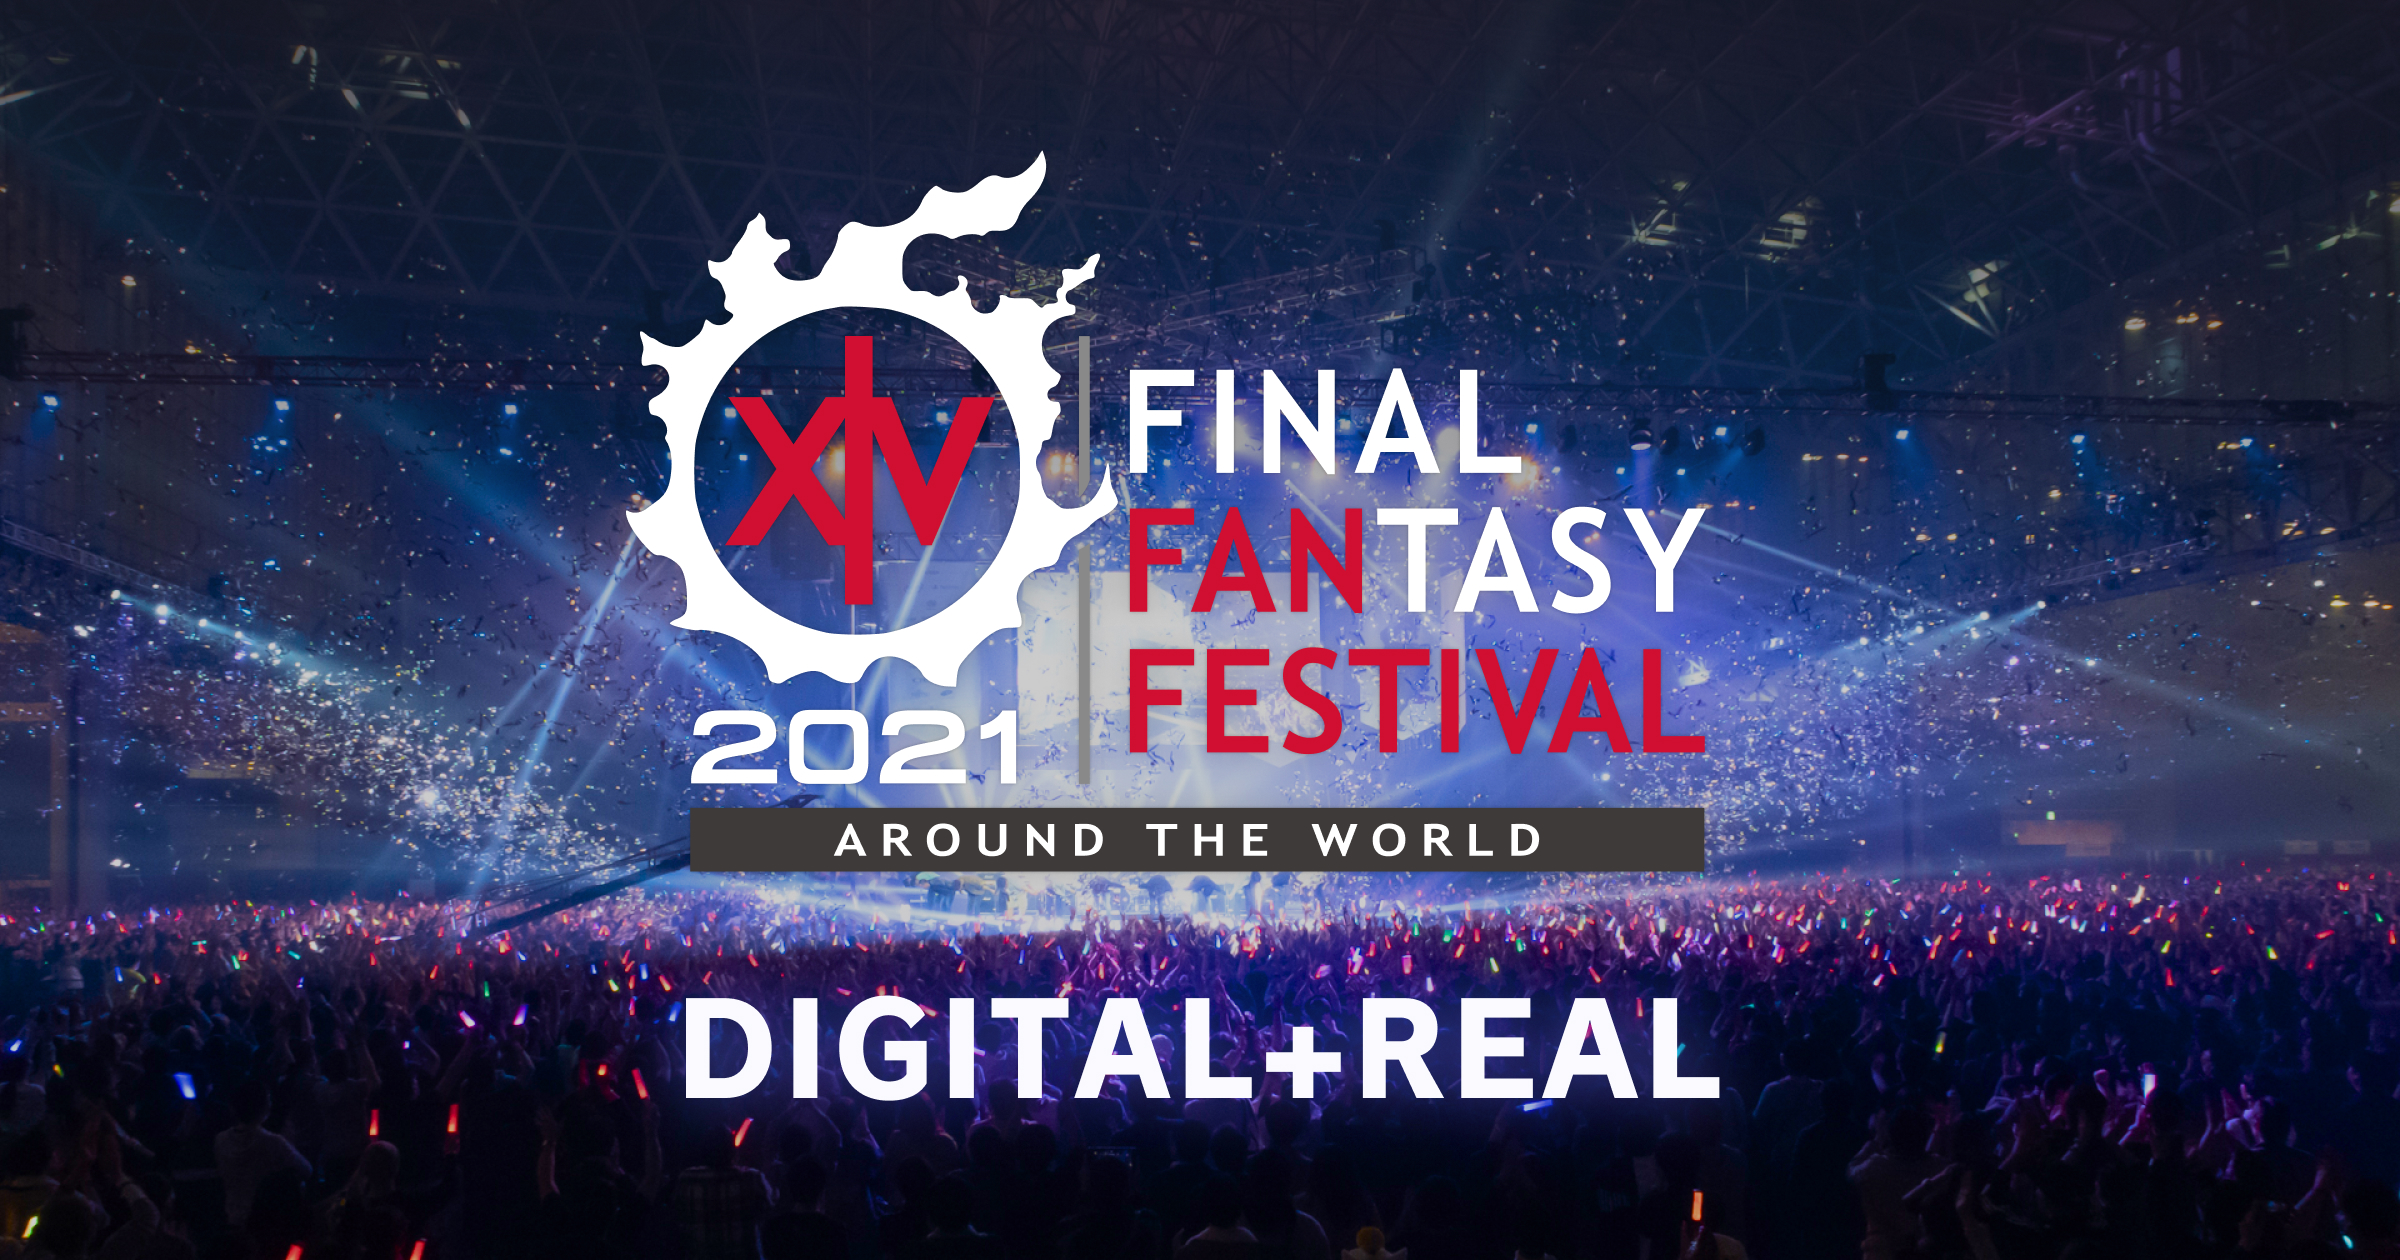 ファイナルファンタジーxiv デジタルファンフェスティバル 21